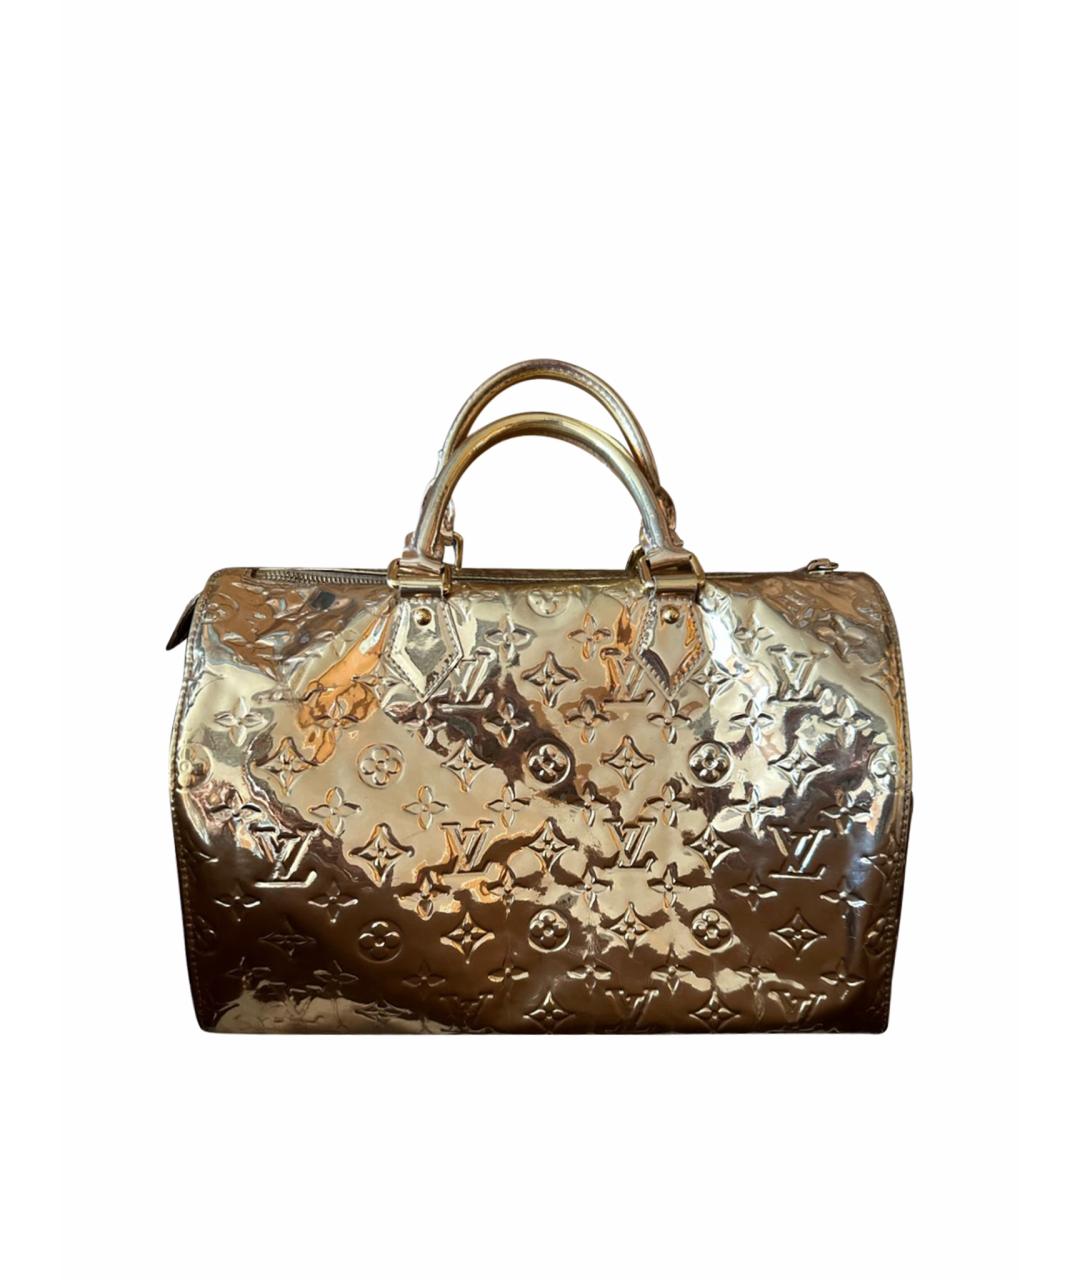 LOUIS VUITTON PRE-OWNED Золотая сумка с короткими ручками из лакированной кожи, фото 1